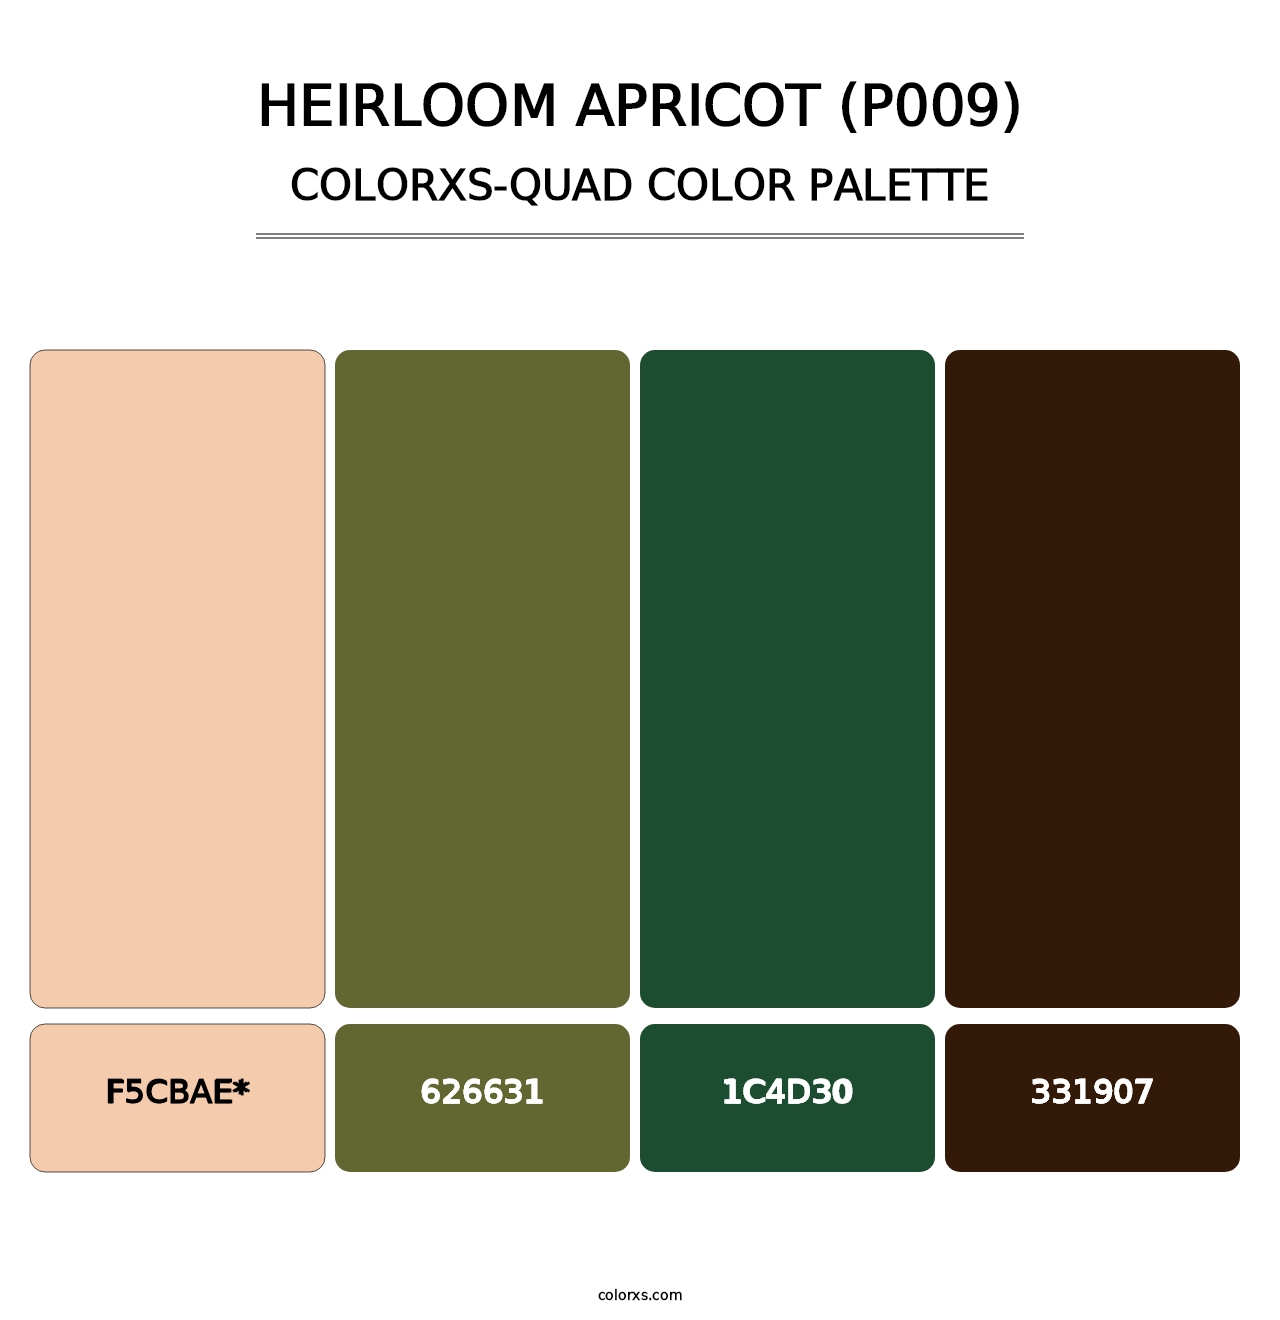 Heirloom Apricot (P009) - Colorxs Quad Palette